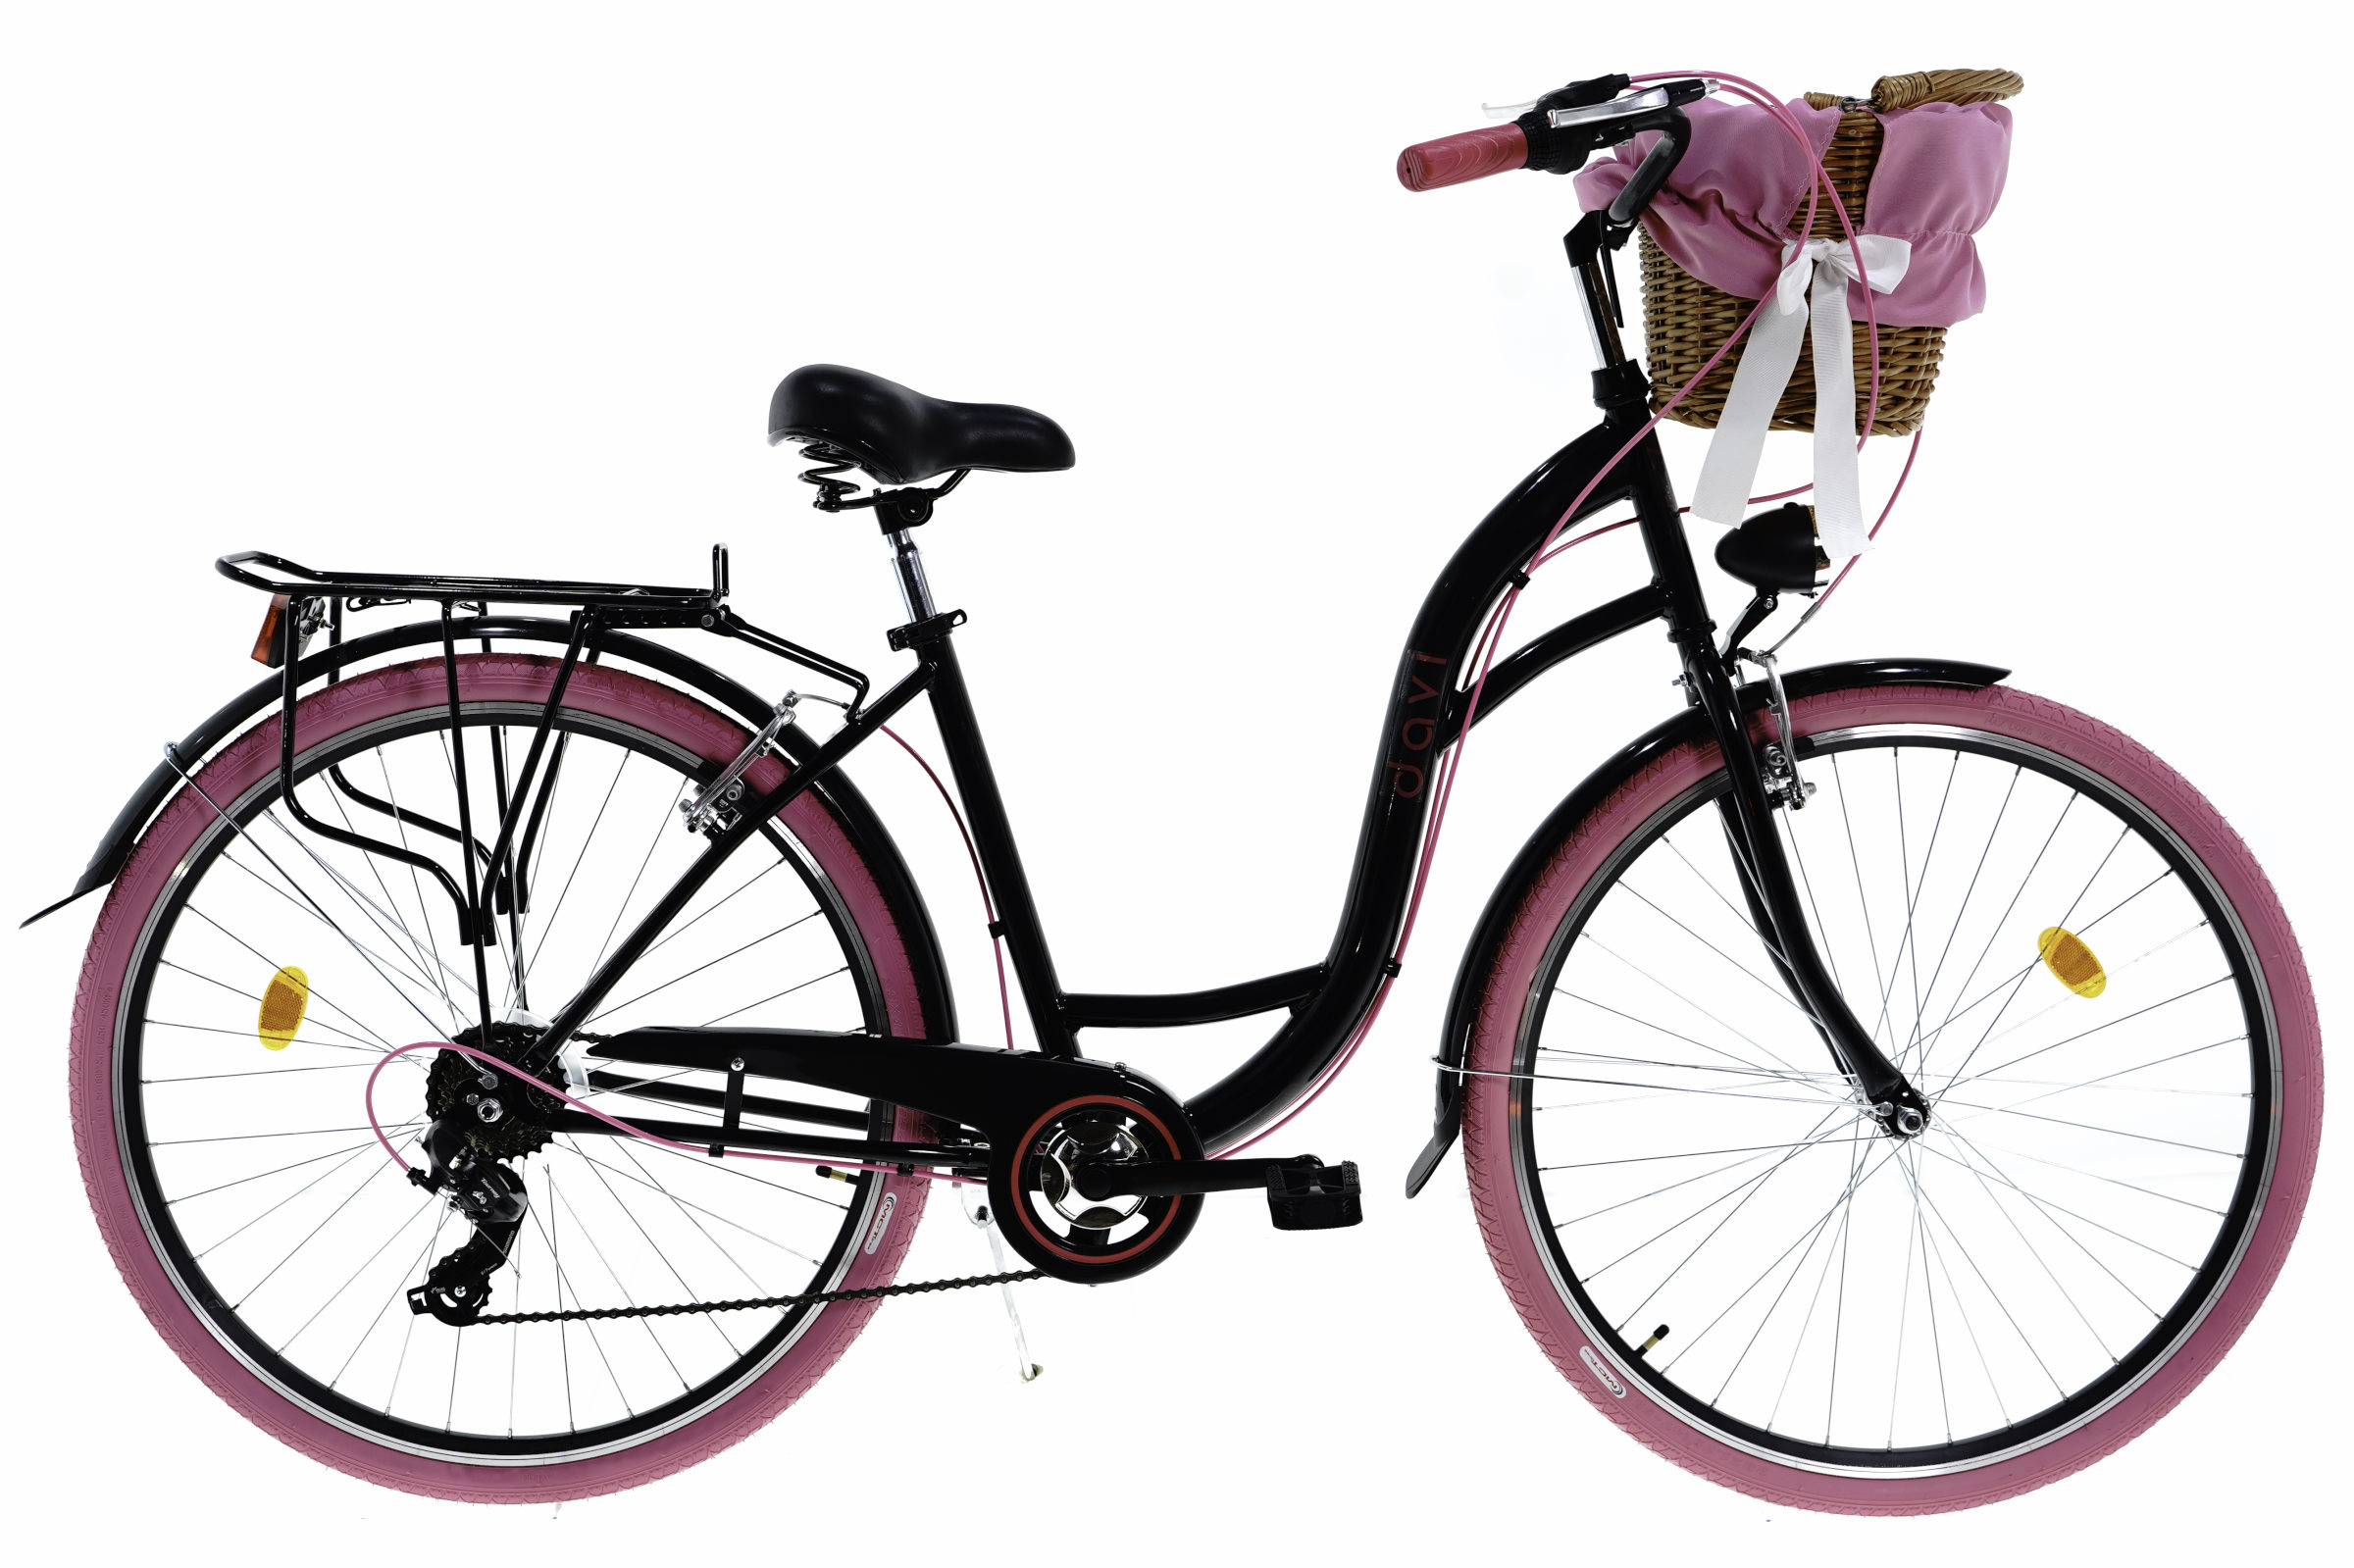 Дамски велосипед Davi Emma, 7-скоростен Shimano, 160-185 cm височина, колела 28″, Черен/Розов